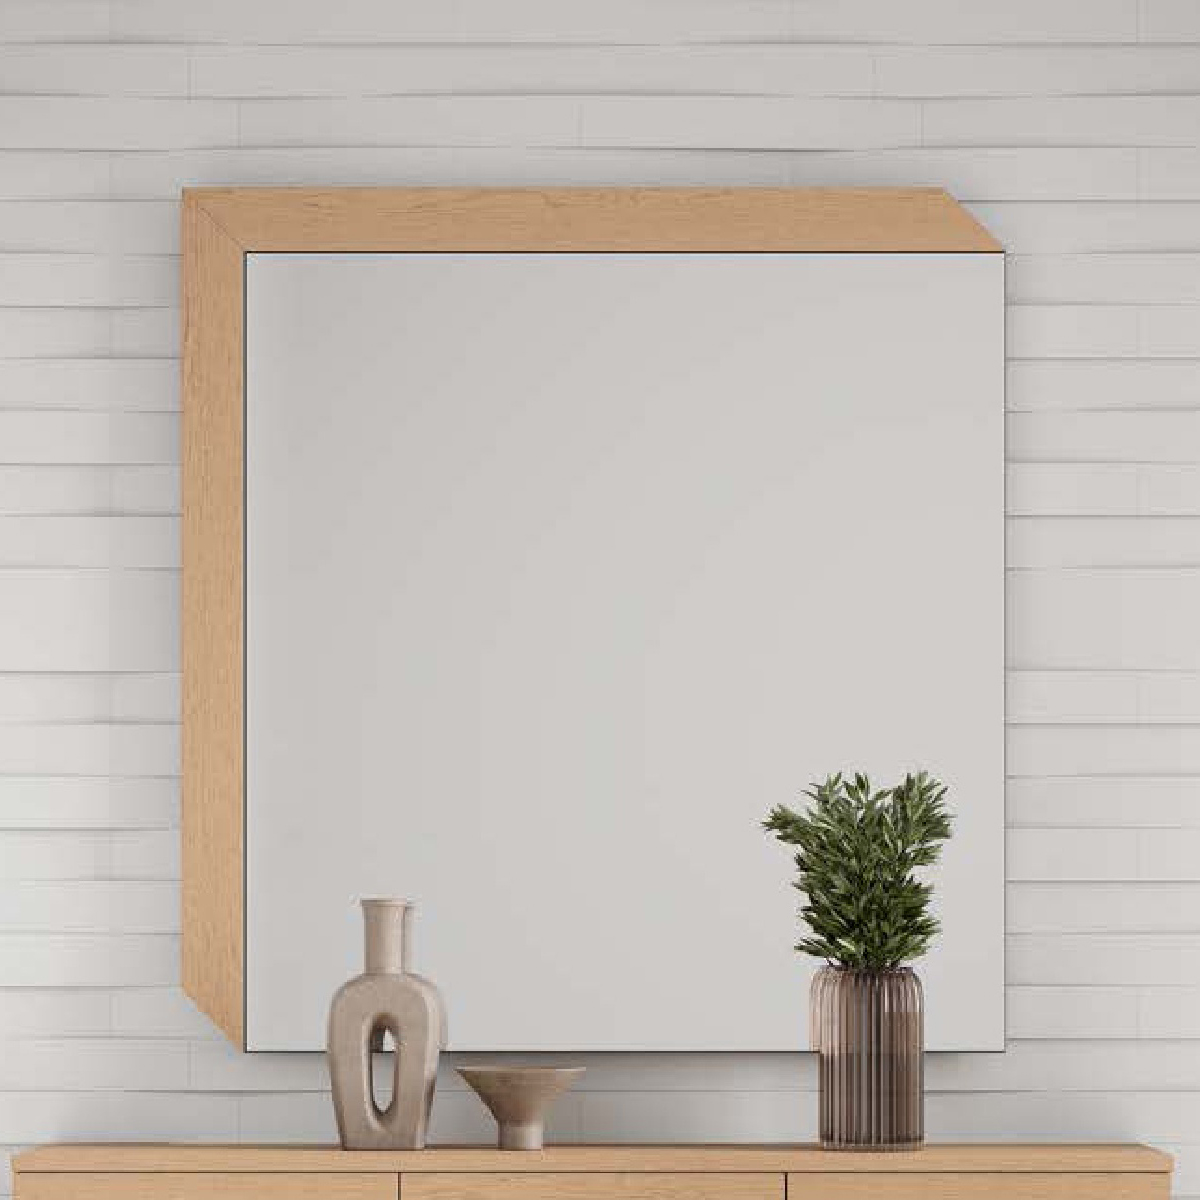 Зеркало с рамой Disemobel Kendra, цвет Roble Seda, размер 105x2x110 см (4087)4087